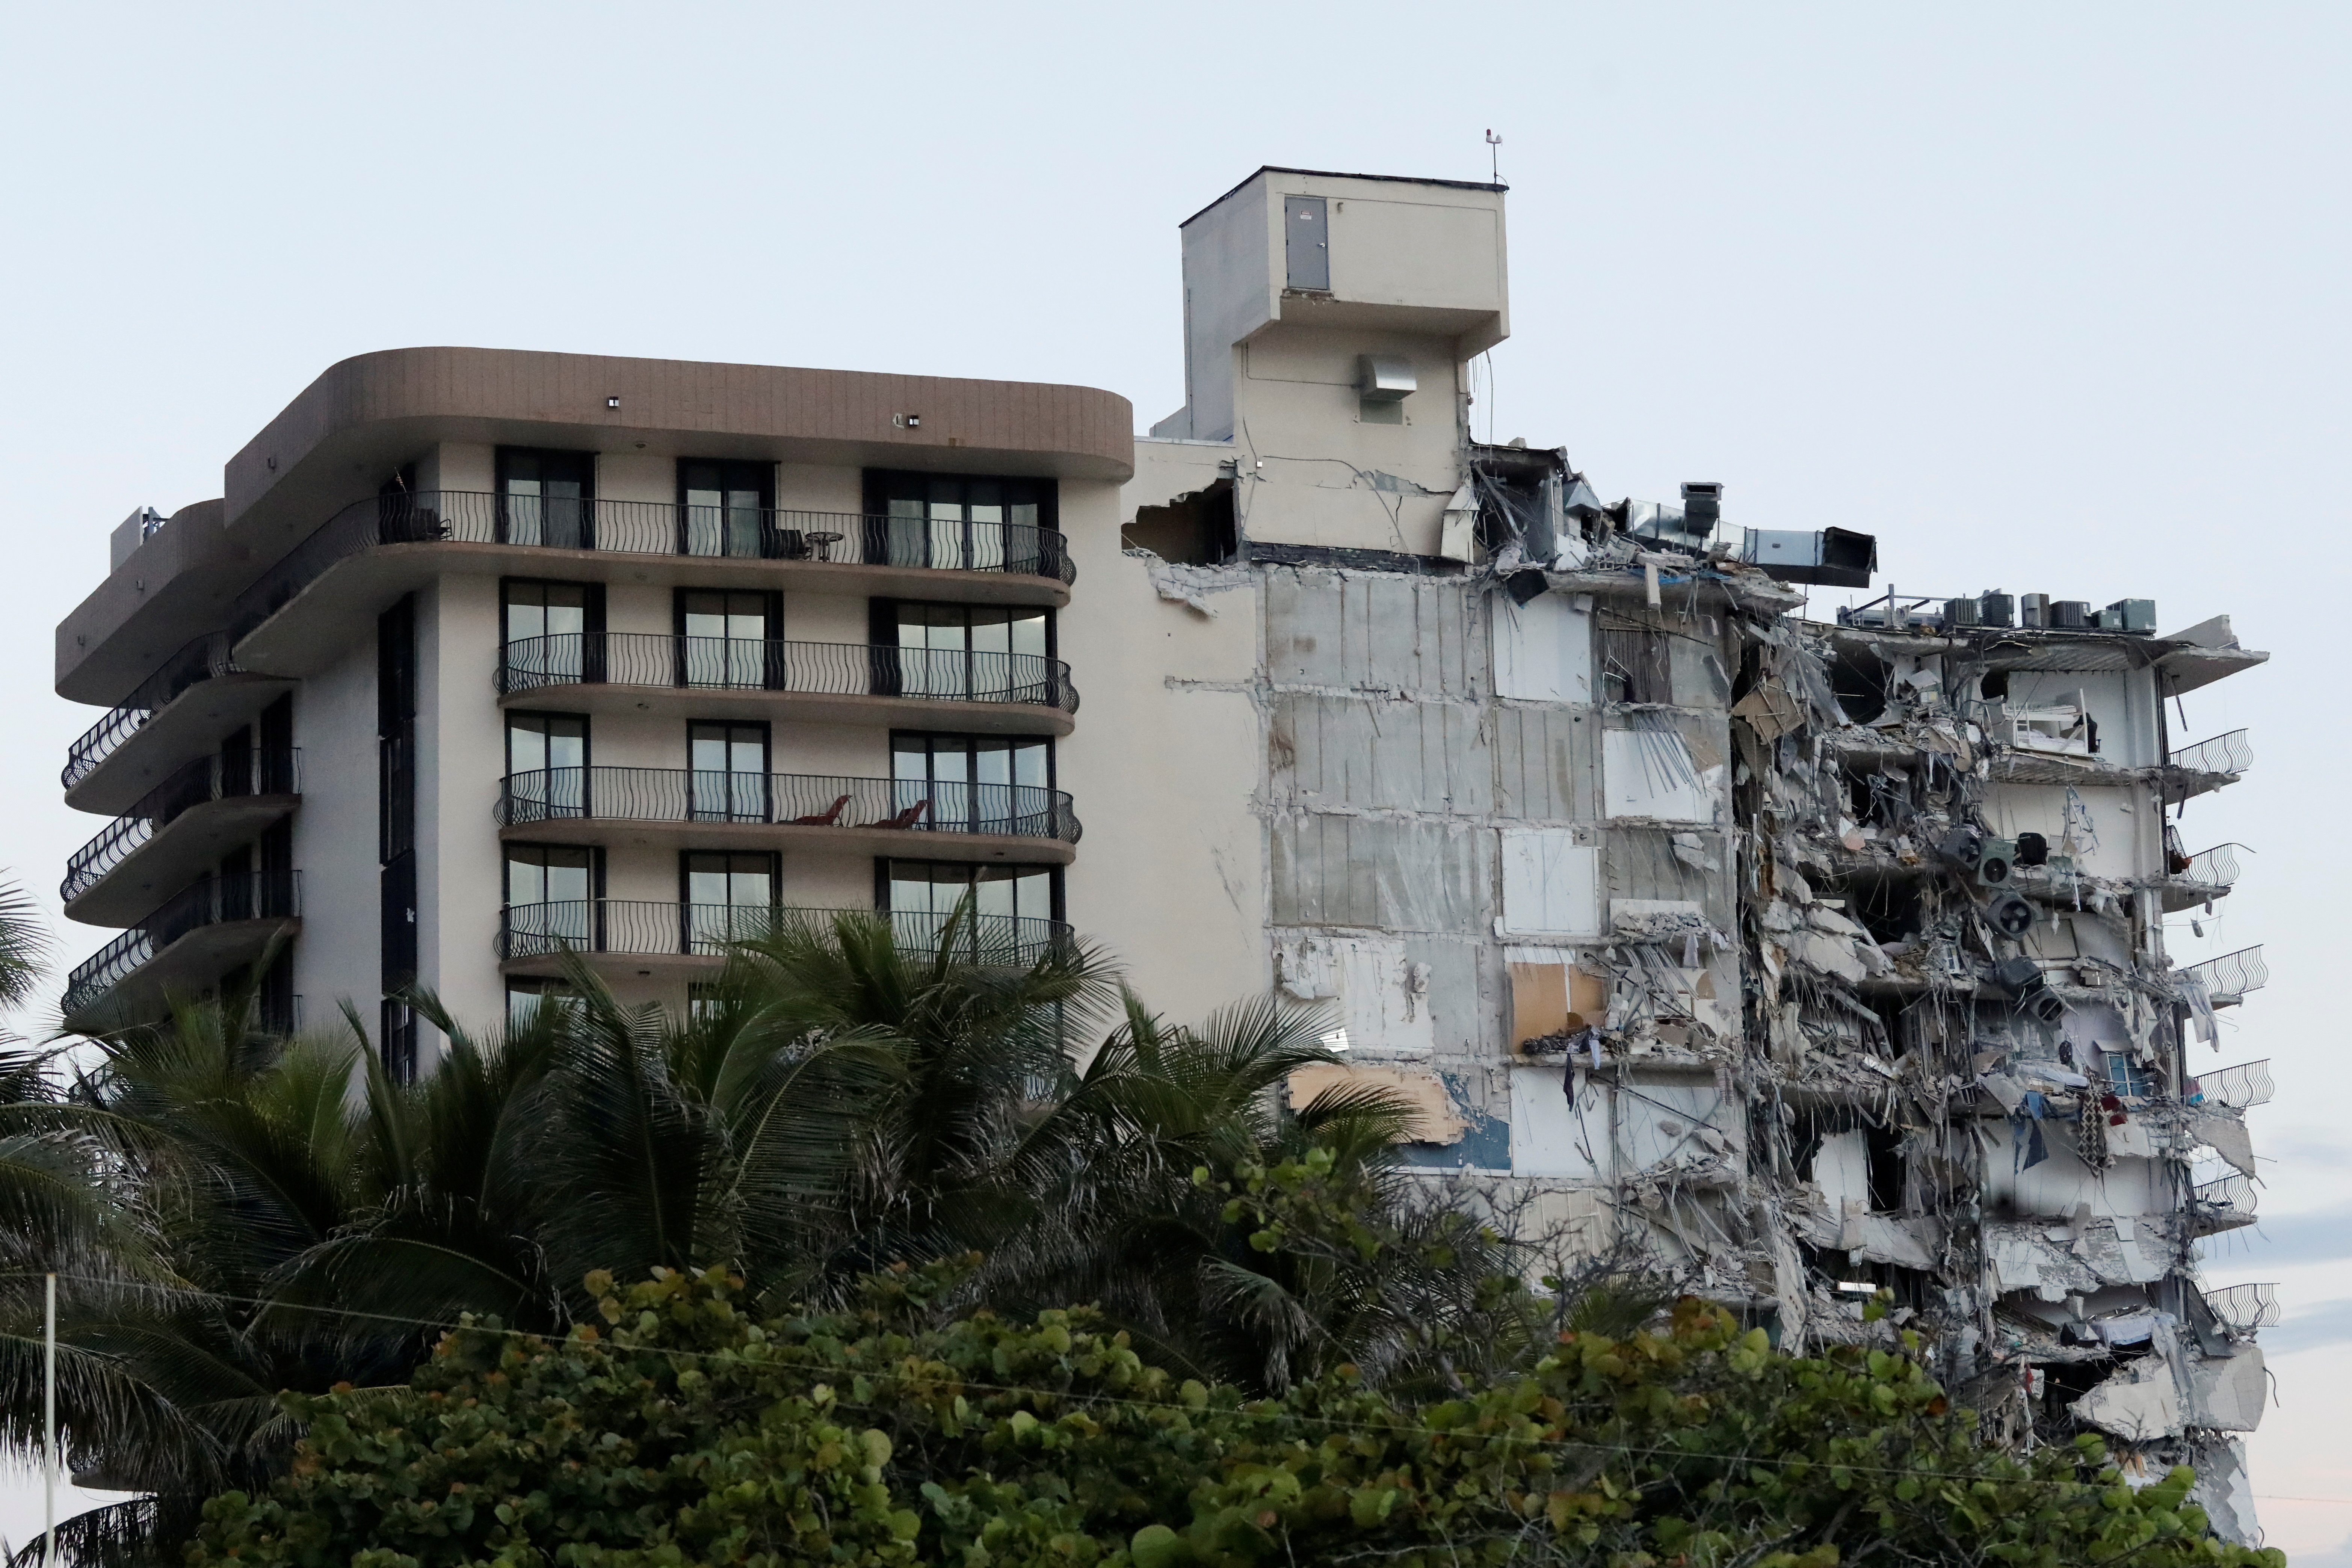 Imágenes devastadoras desde un drone: Así quedó la zona donde estaba el edificio que se derrumbó en Miami